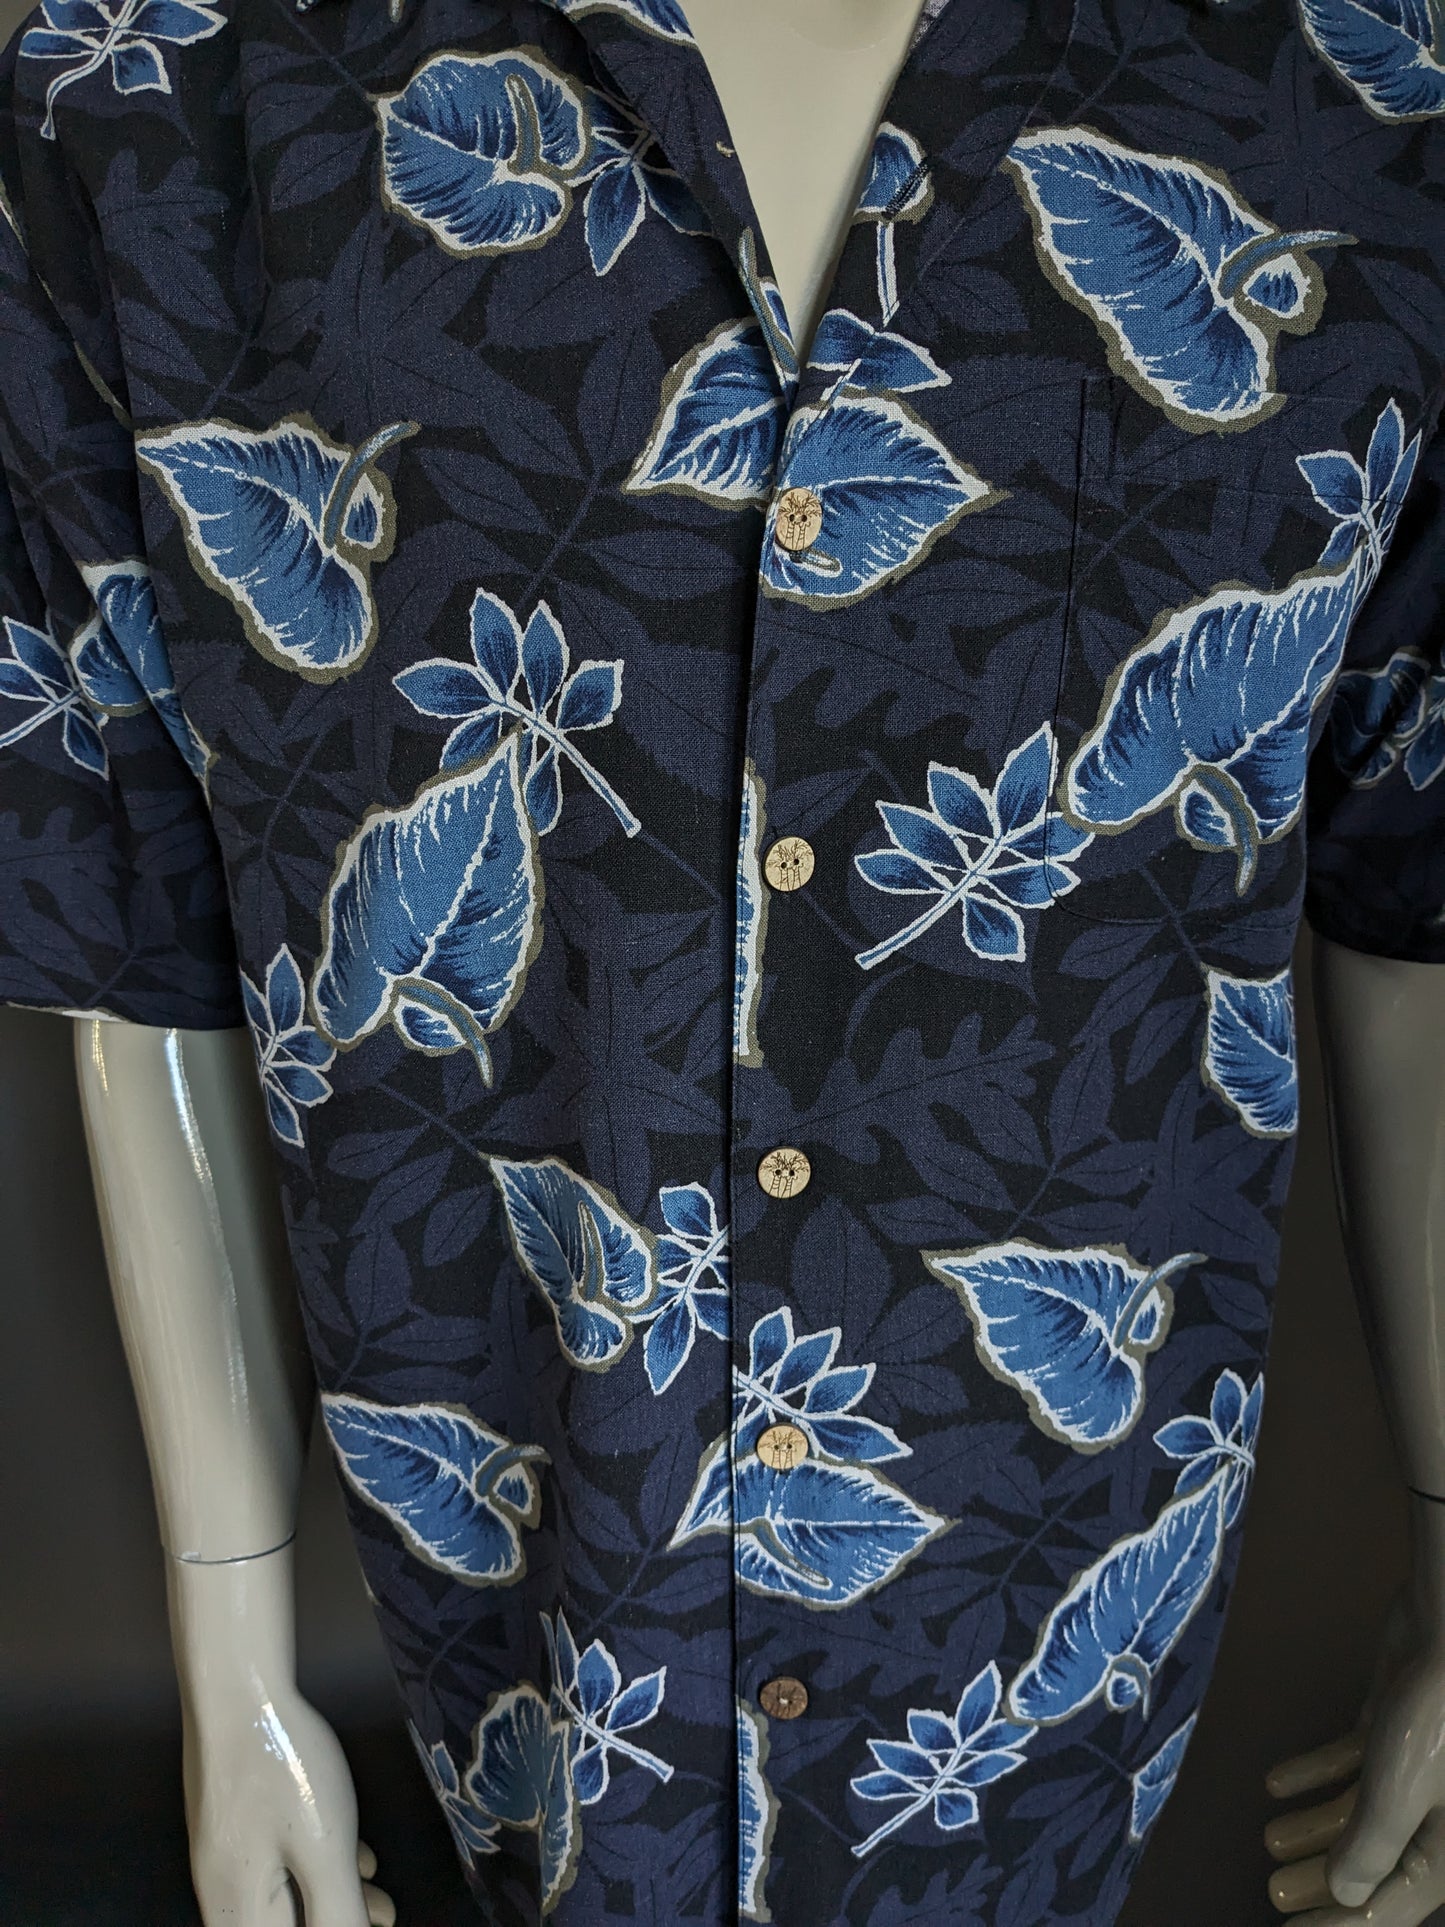 Paradis Silk Blue Hawaii Shirt Sleeve. Motif de feuille bleue. Taille xl. 70% de soie.